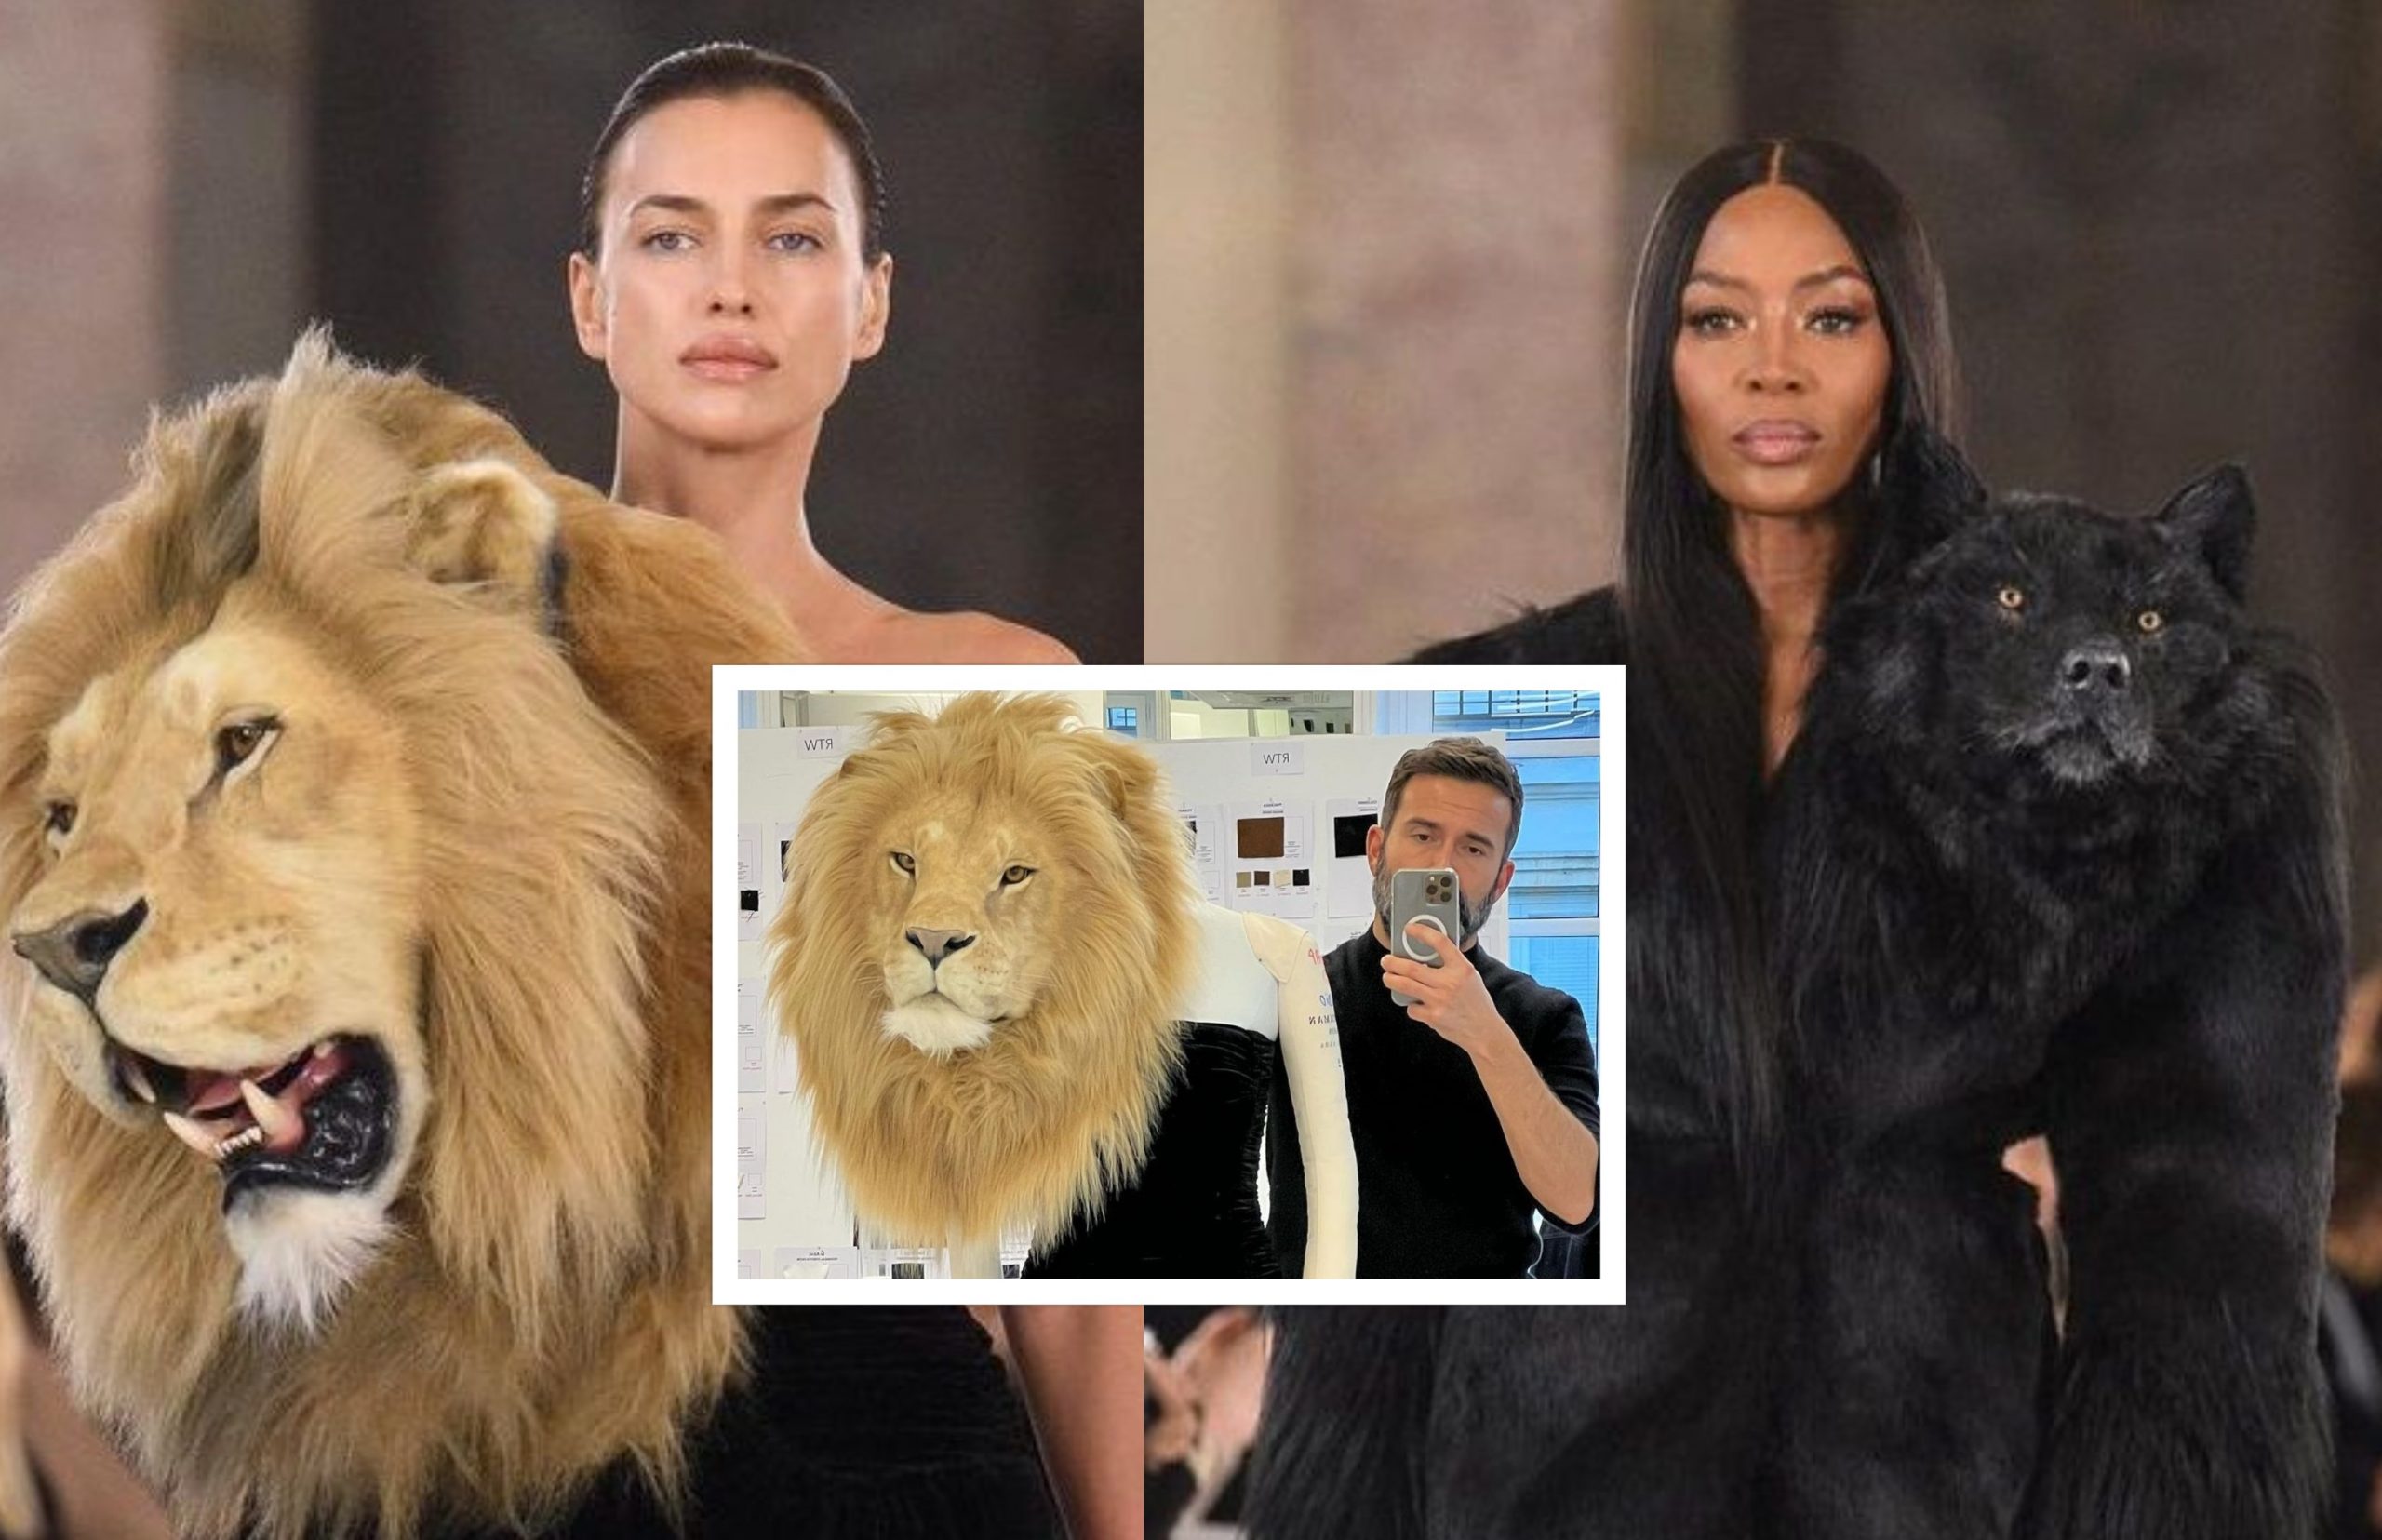 Η Σάικ, η Χάρλοου και ο σχεδιαστής του οίκου Schiaparelli παίρνουν θέση μετά τον σάλο του fashion show με τις κεφαλές των ζώων